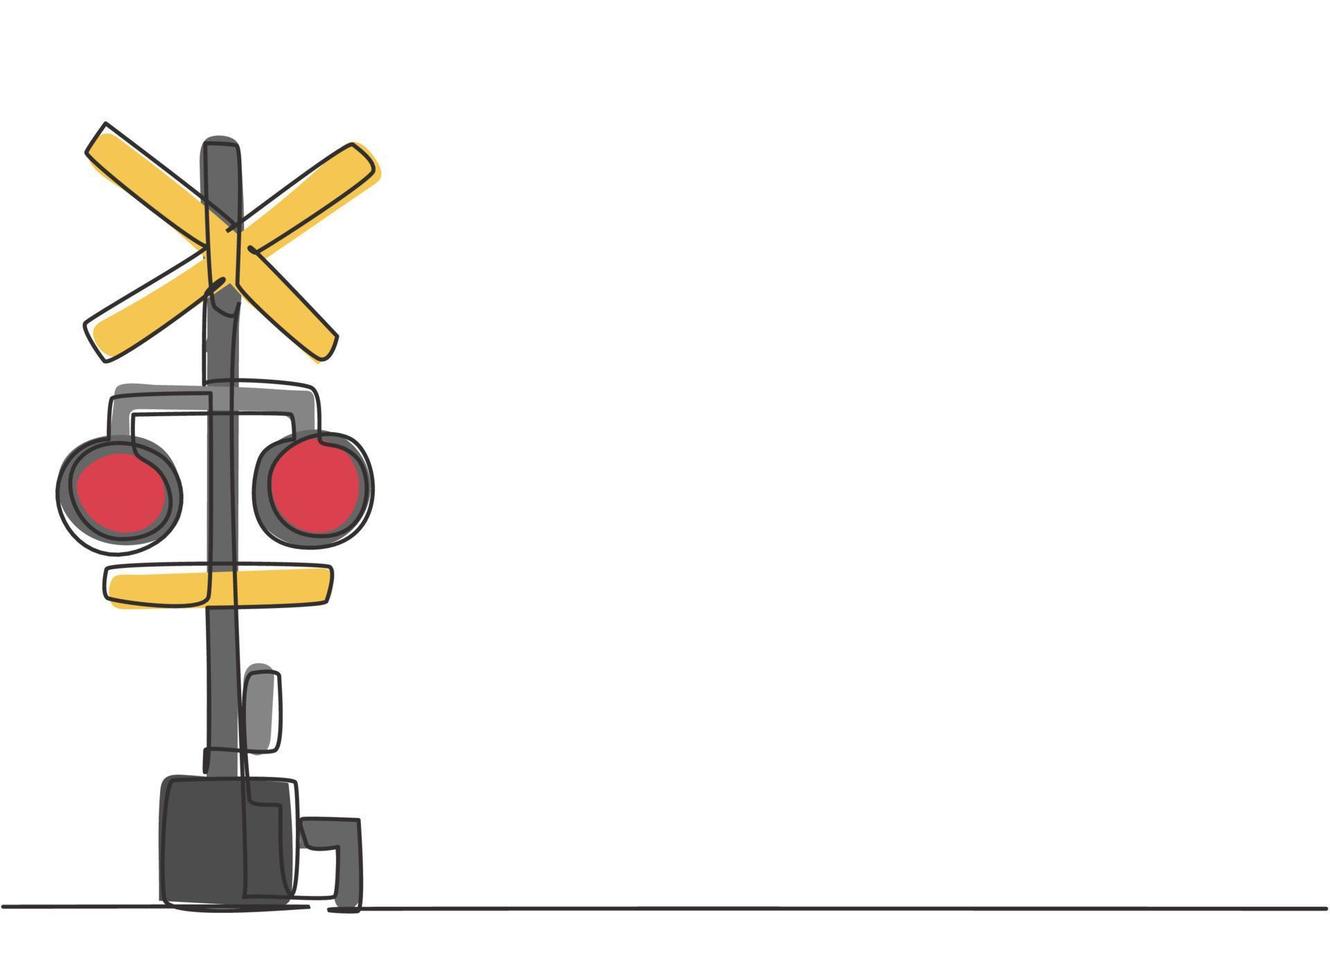 enkele lijntekening van een spoorwegbarrière met borden en waarschuwingslichten in een open positie waardoor voertuigen spoorlijnen kunnen oversteken. moderne doorlopende lijn tekenen ontwerp grafische vectorillustratie vector